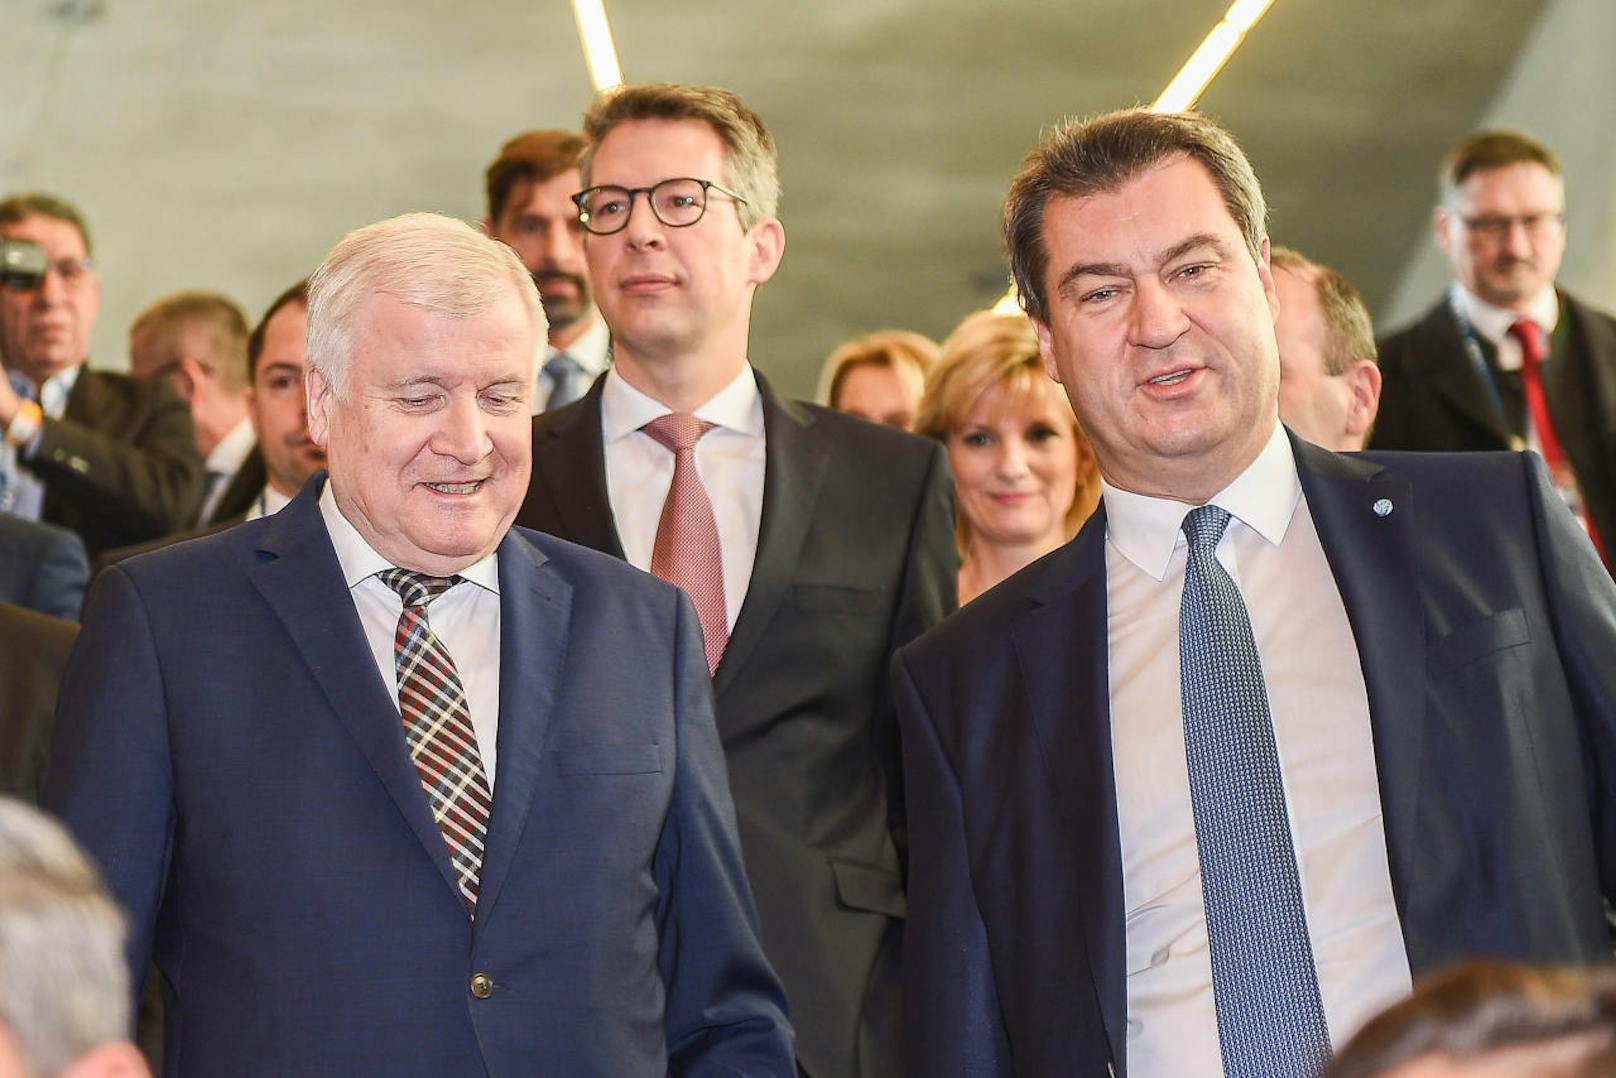 <b>Horst Seehofer</b>, Bundesminister für Inneres, Bau und Heimat und <b>Markus Söder</b>, bayerischer Ministerpräsident, kommen gemeinsam ins Plenum, am CSU-Parteitag in München.